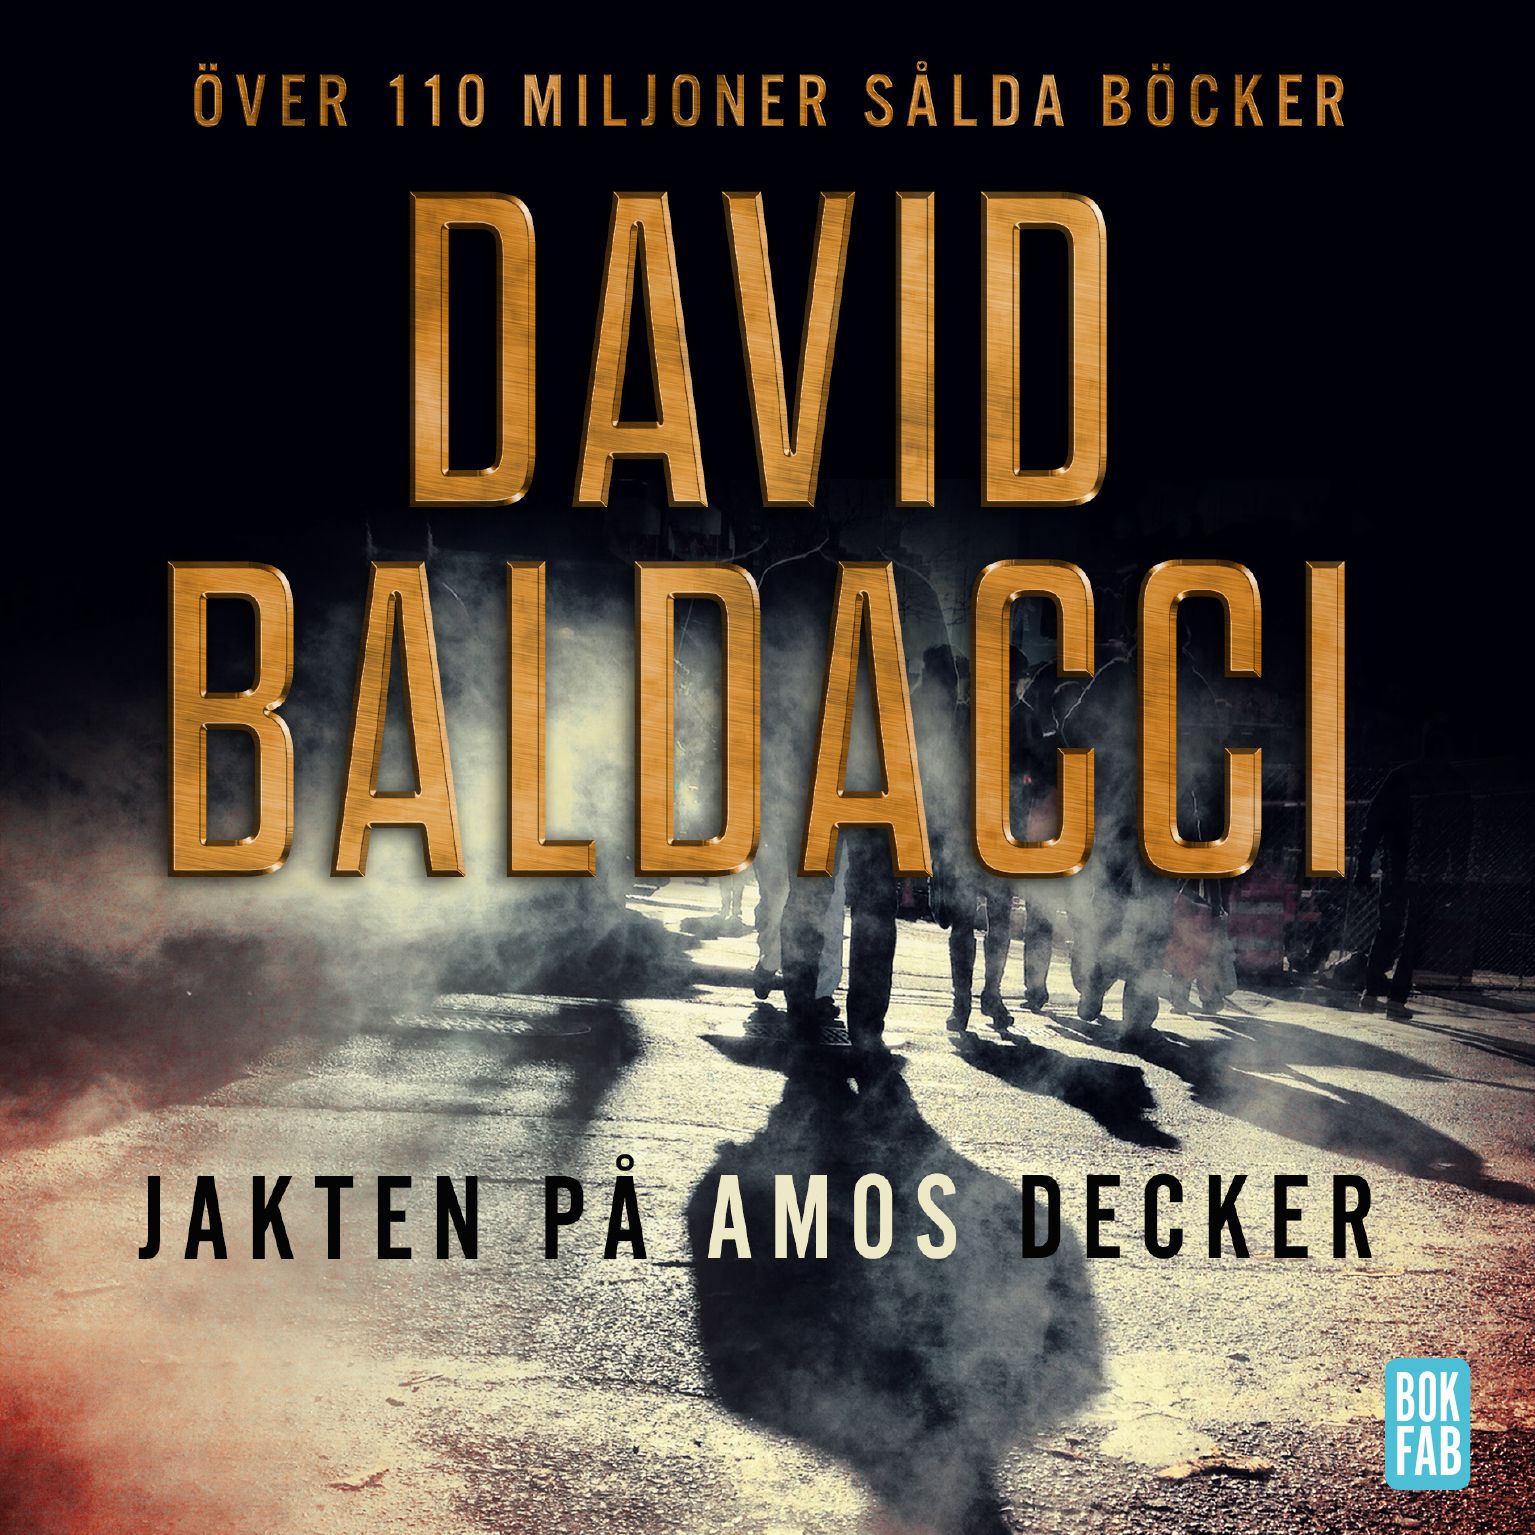 Jakten på Amos Decker, ljudbok av David Baldacci